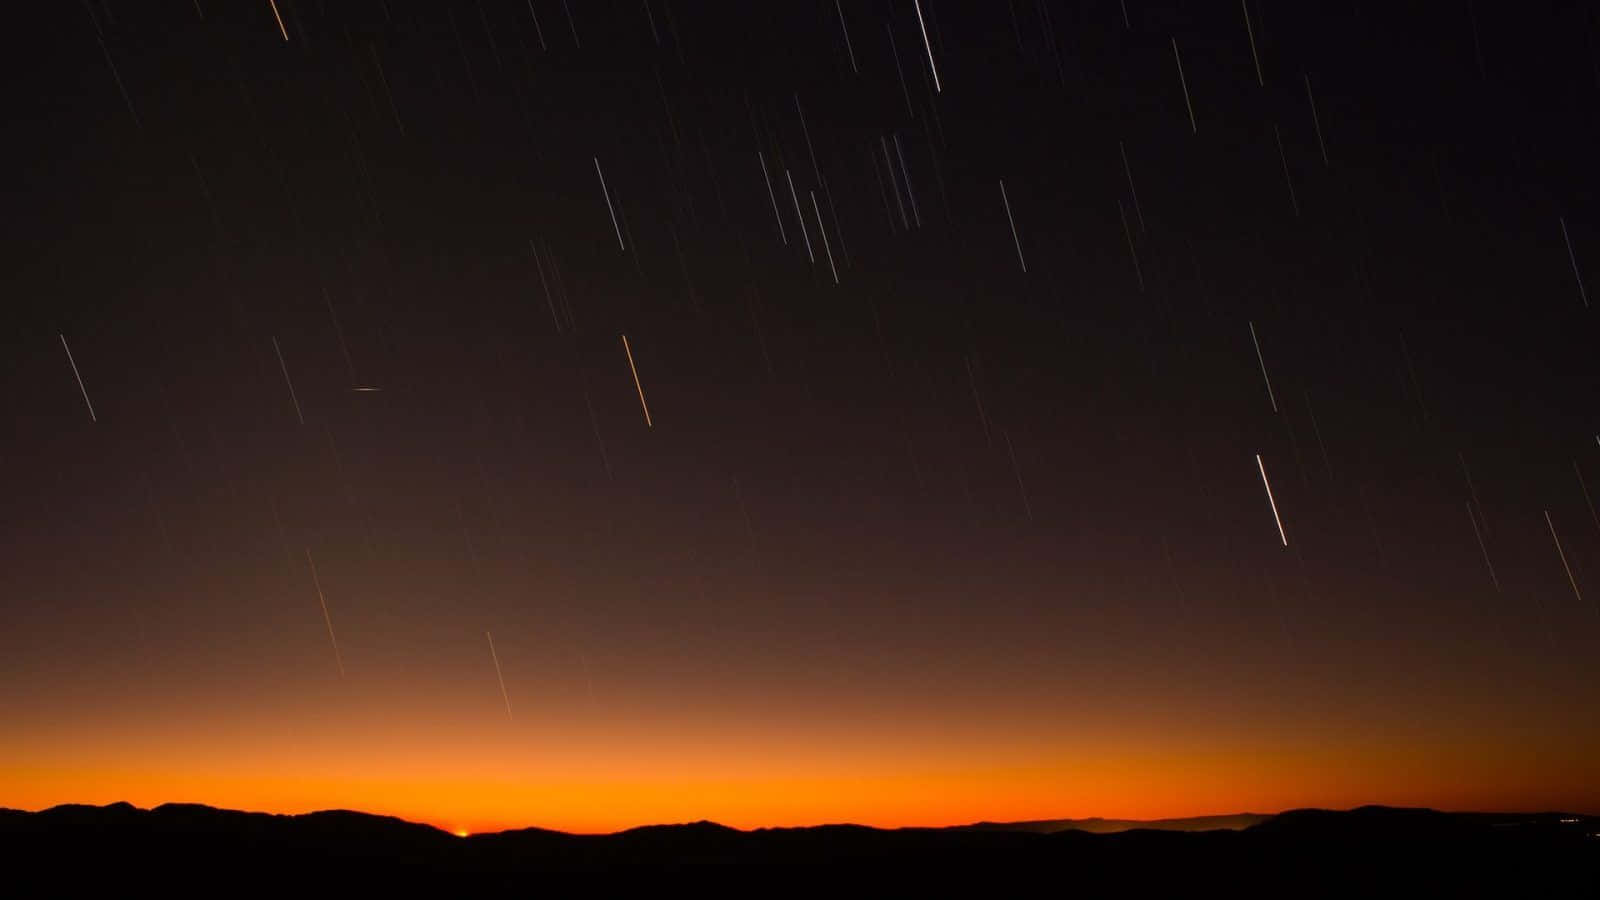 A meteor streaks across the night sky